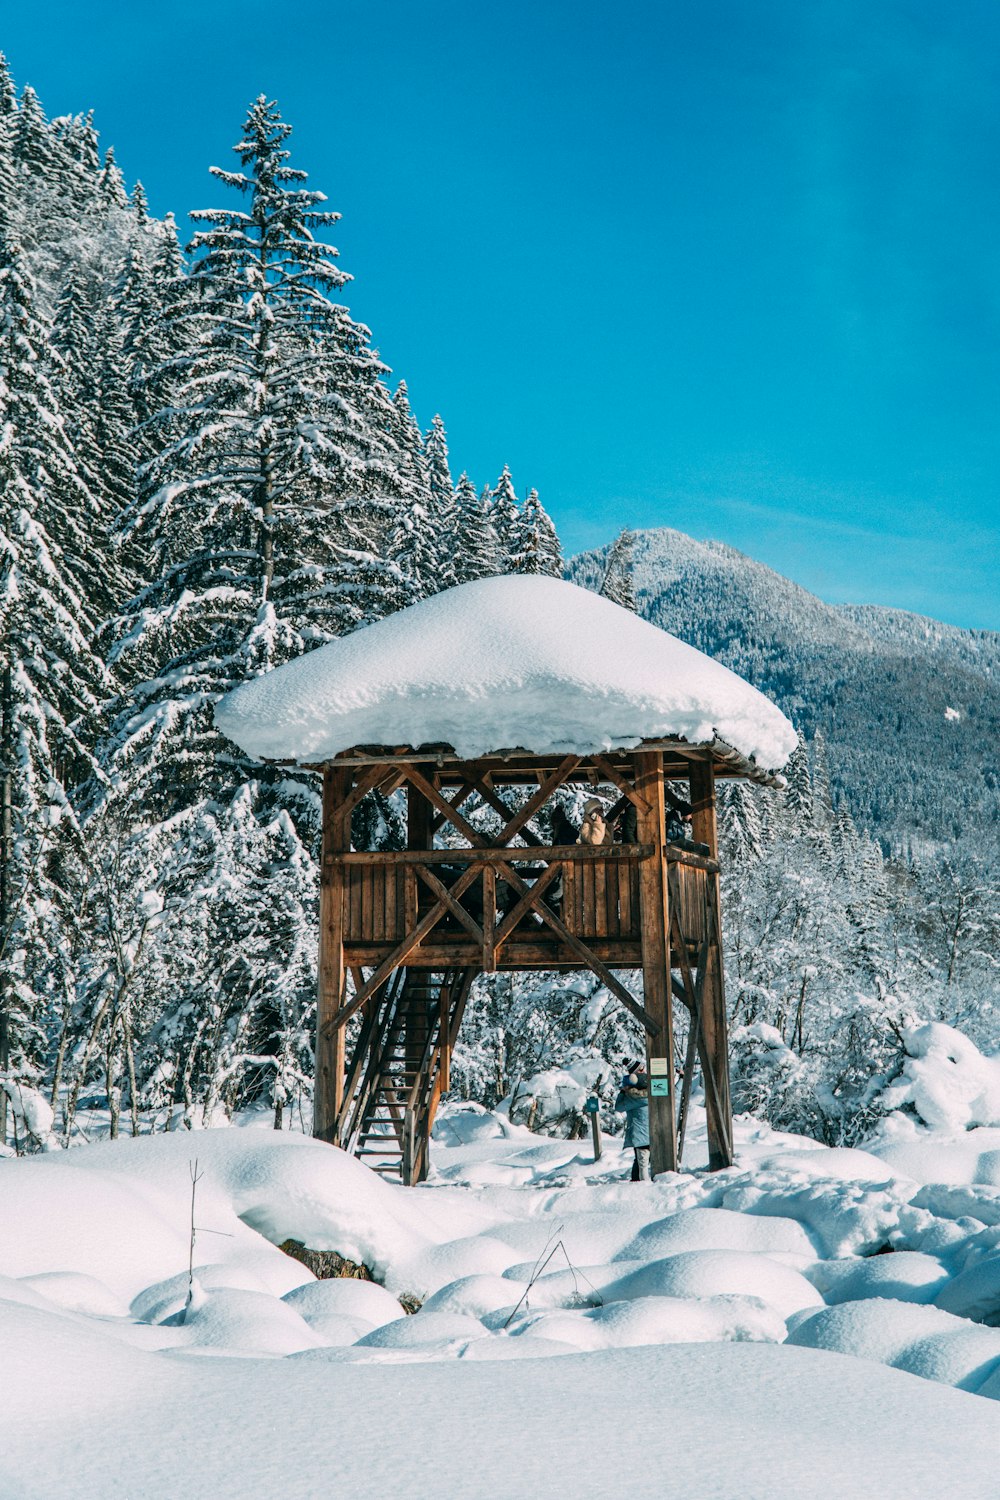 낮에는 나무 근처에 눈이 쌓인 갈색 목조 주택